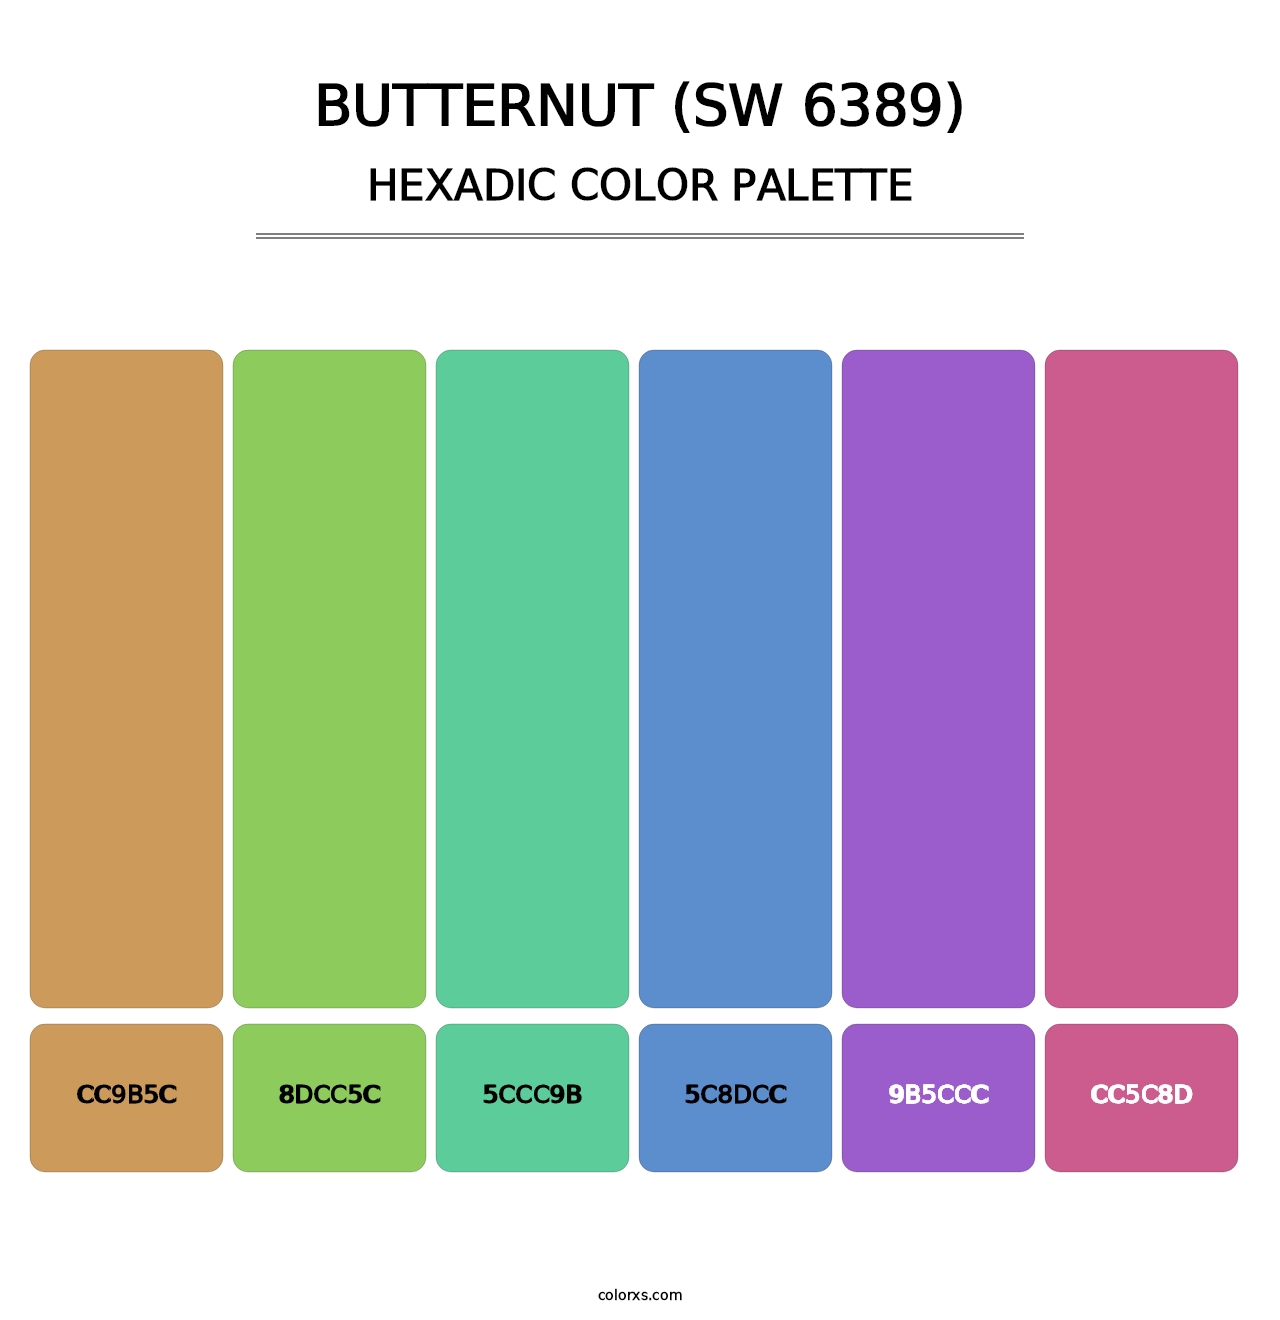 Butternut (SW 6389) - Hexadic Color Palette